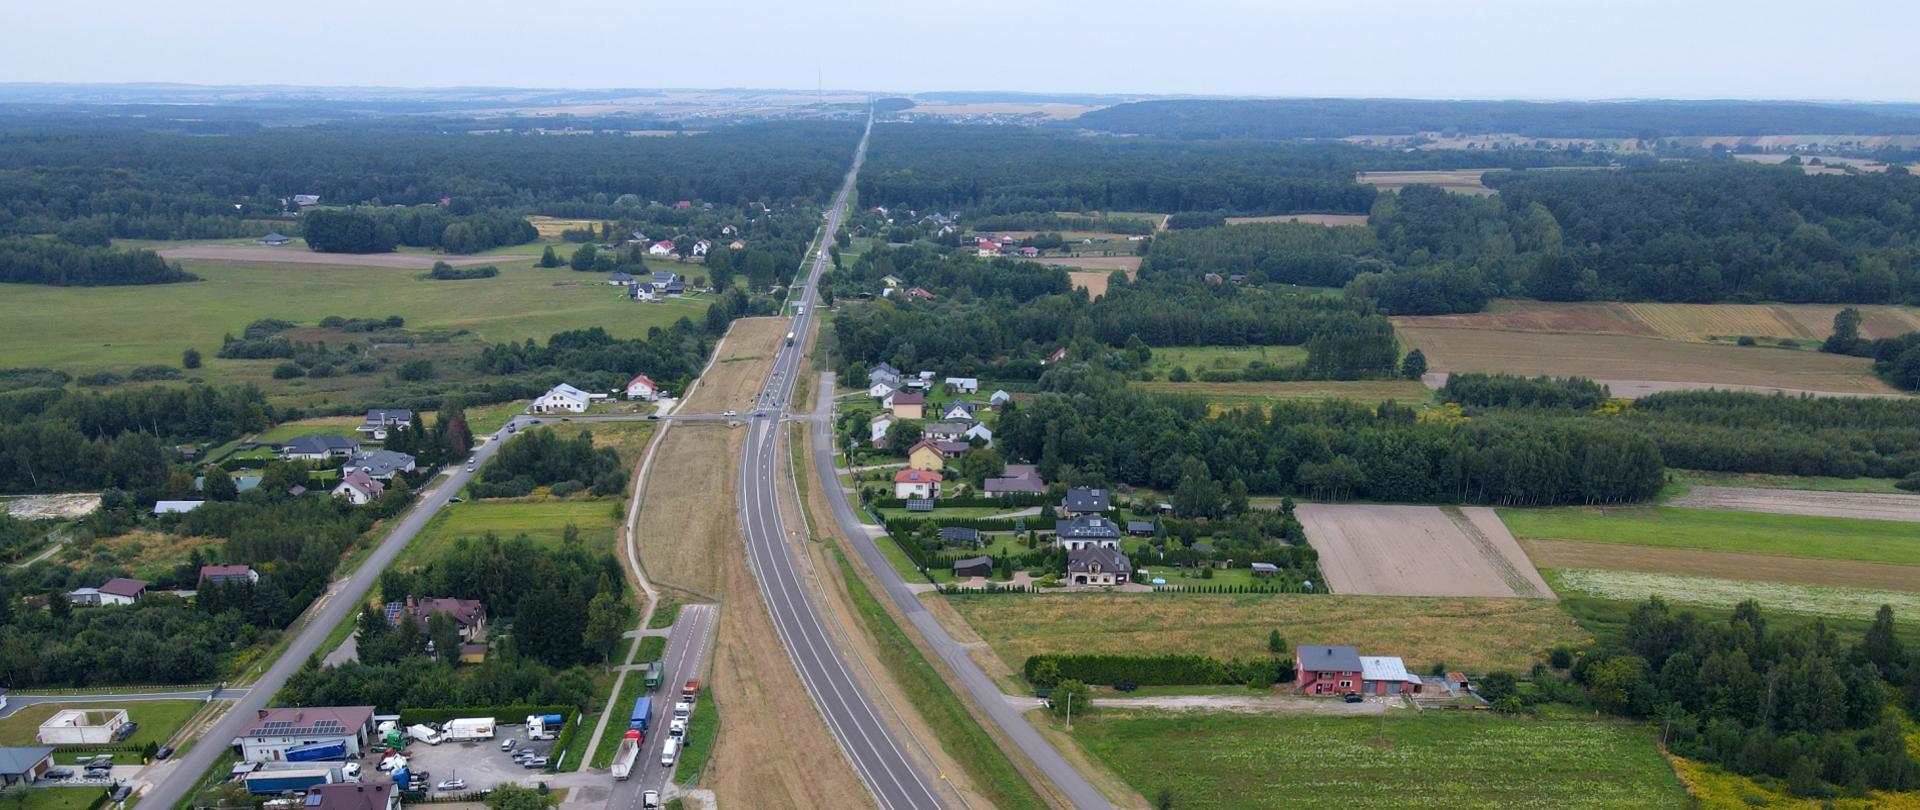 Zdjęcie lotnicze drogi krajowej DK17 w okolicach Zamościa i Tomaszowa Lubelskiego. Droga krajowa ciągnąca się po horyzont przechodząca w okolicach zabudowań i przechodząca przez lasy i łąki.